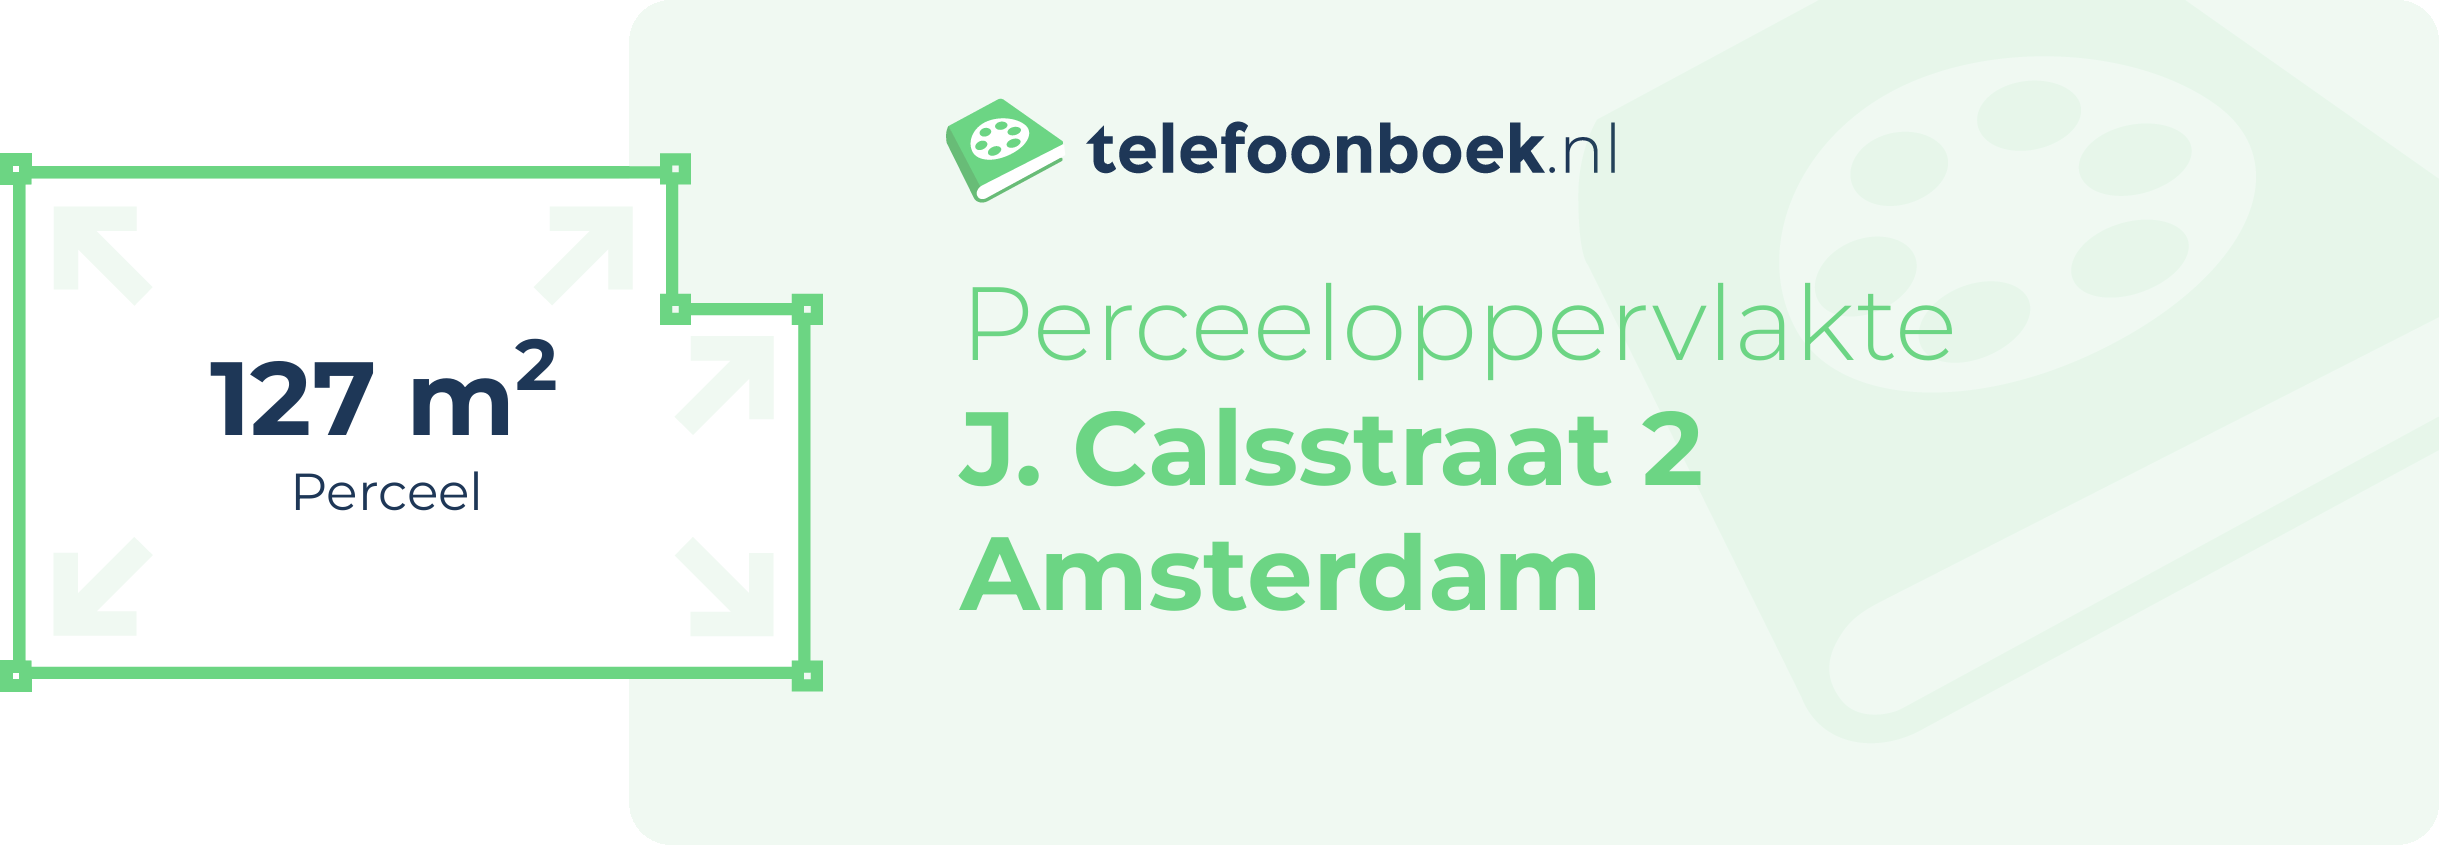 Perceeloppervlakte J. Calsstraat 2 Amsterdam